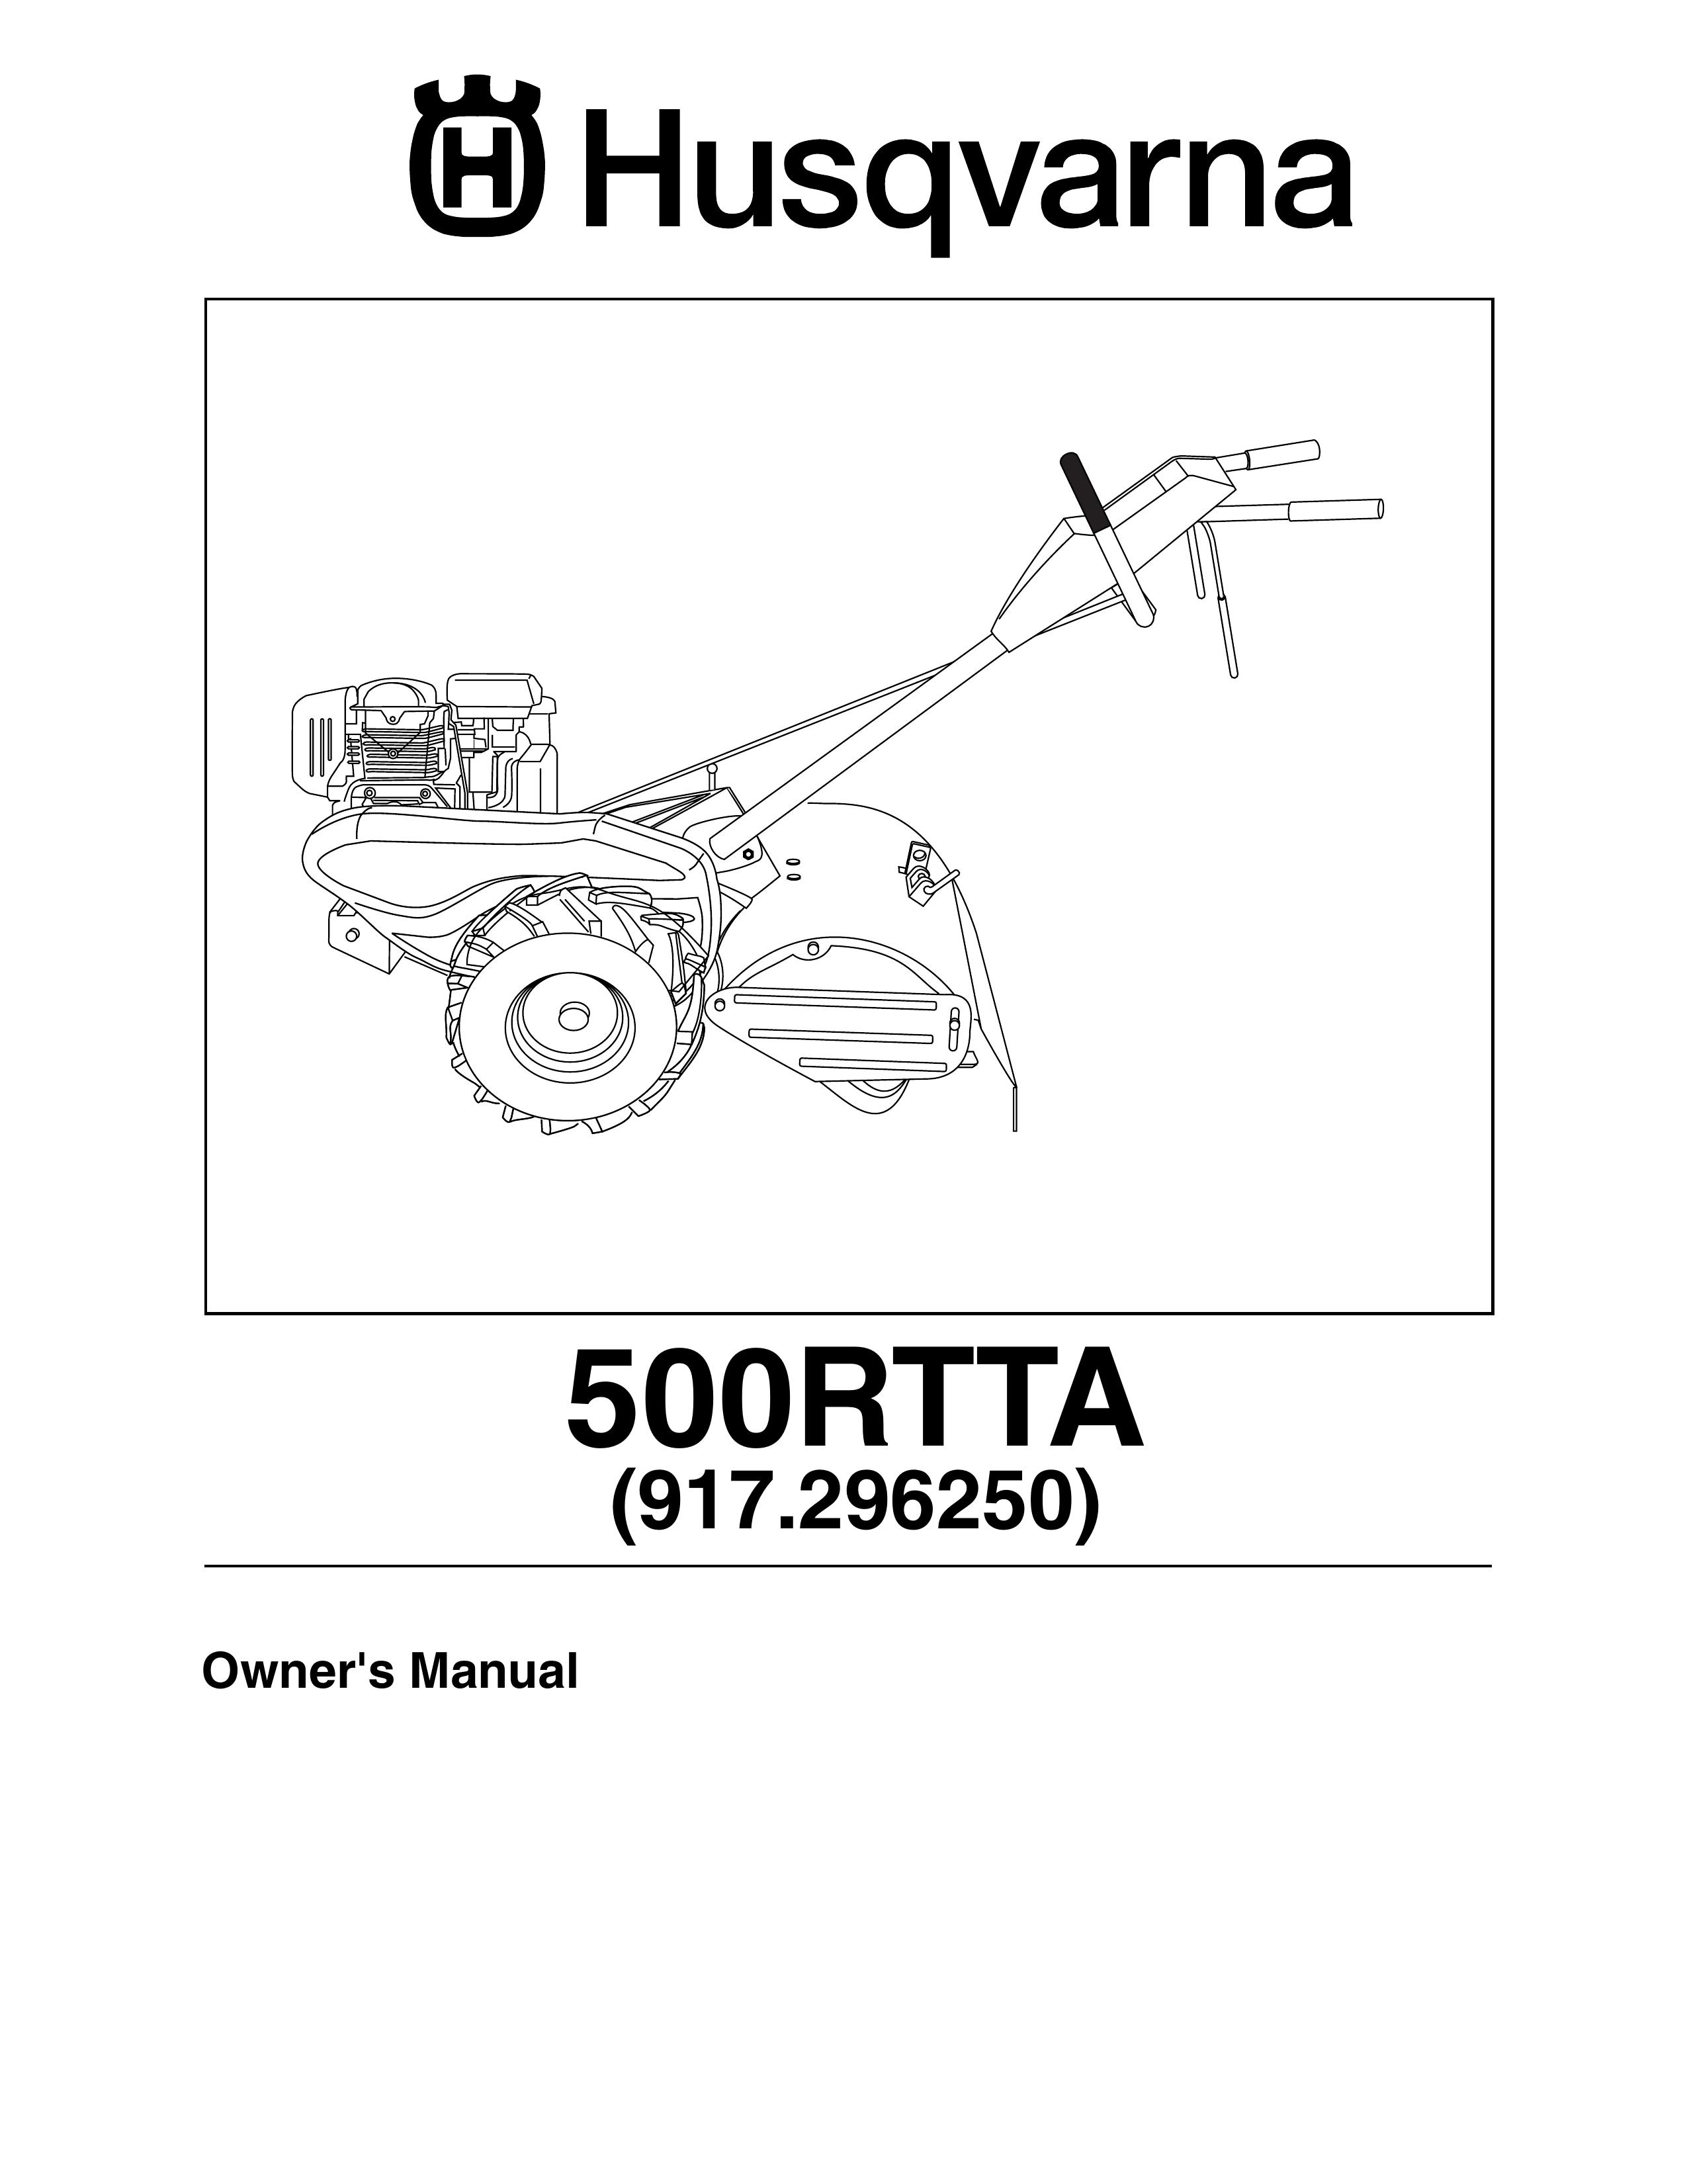 Husqvarna 500RTTA Tiller User Manual